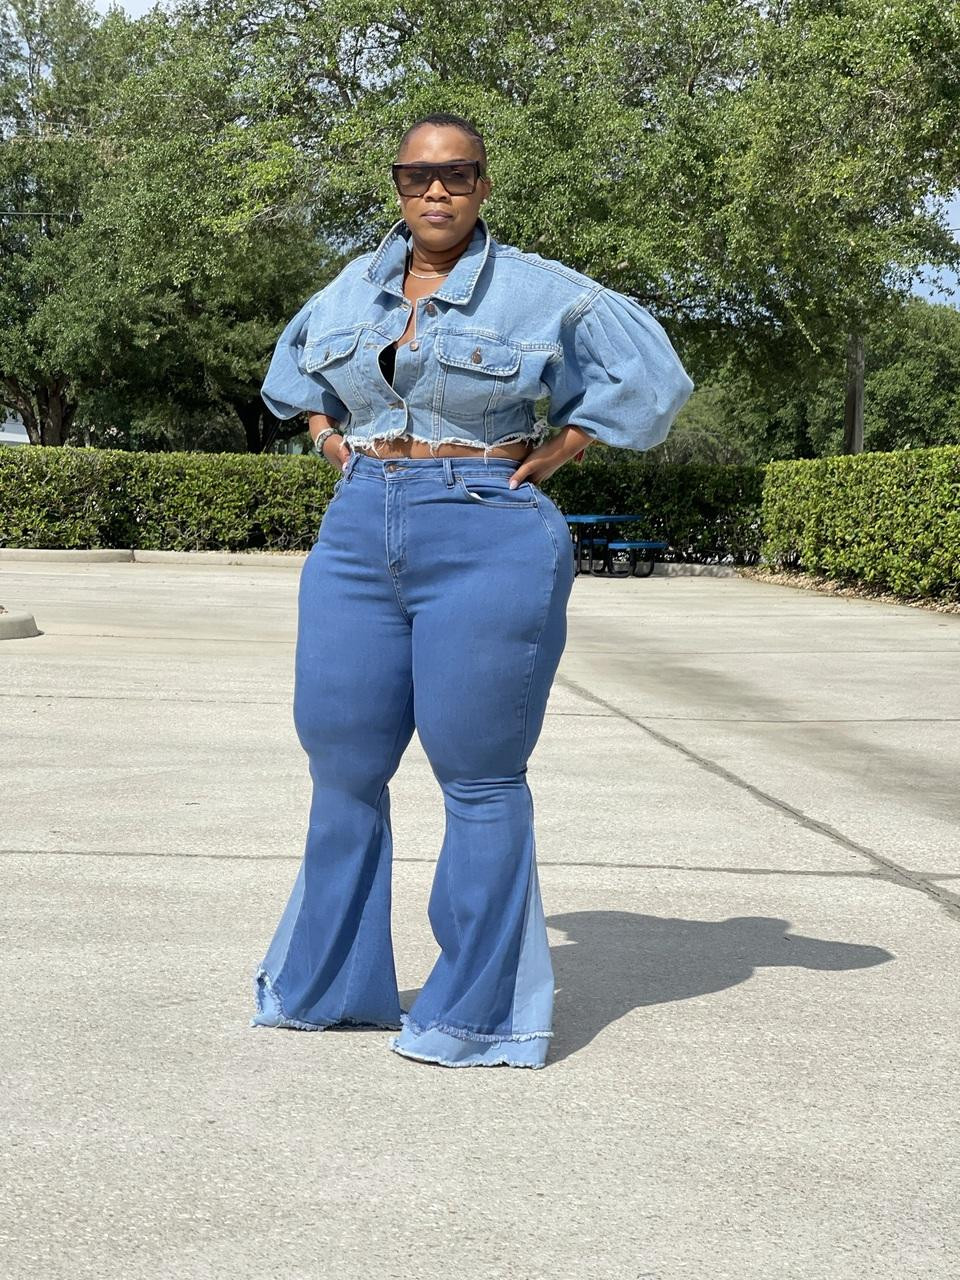 Billie Flare Jeans - Plus Size